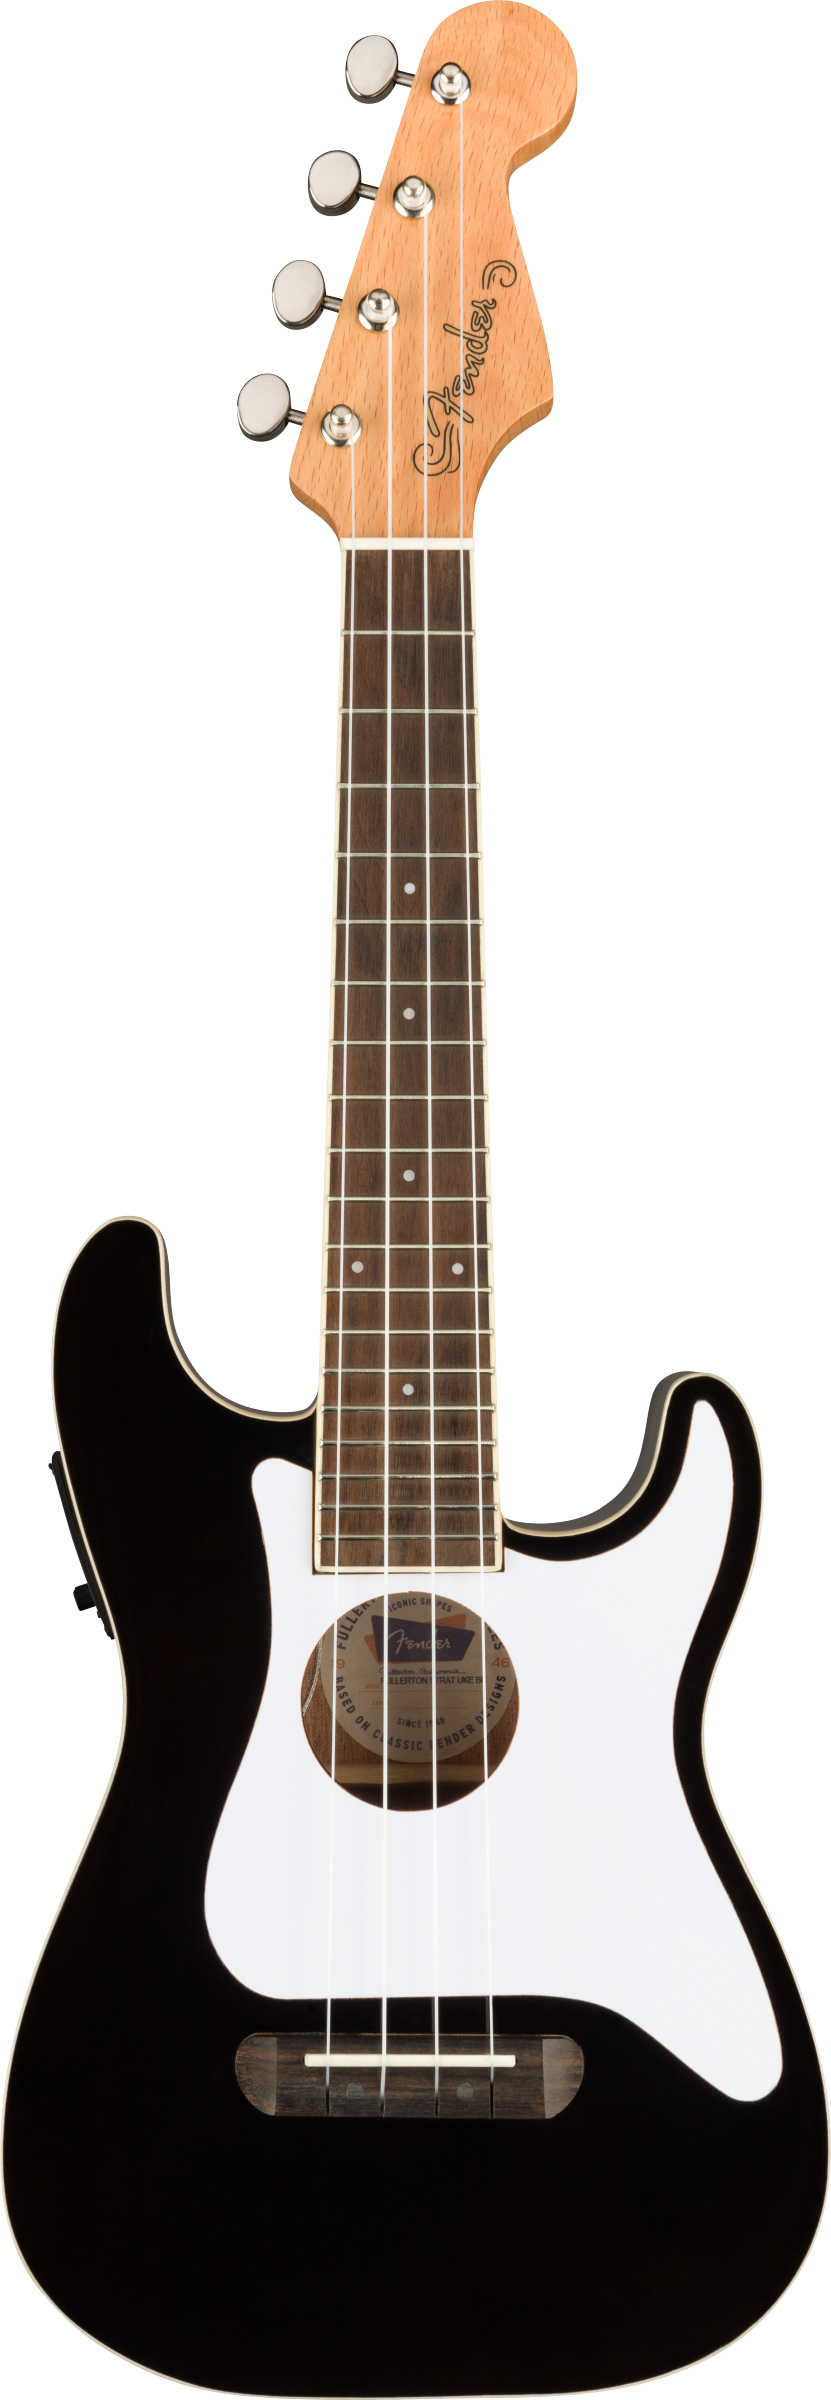 Fender Fullerton Stratocaster Concert Ukulele - Black w/ Gig Bag